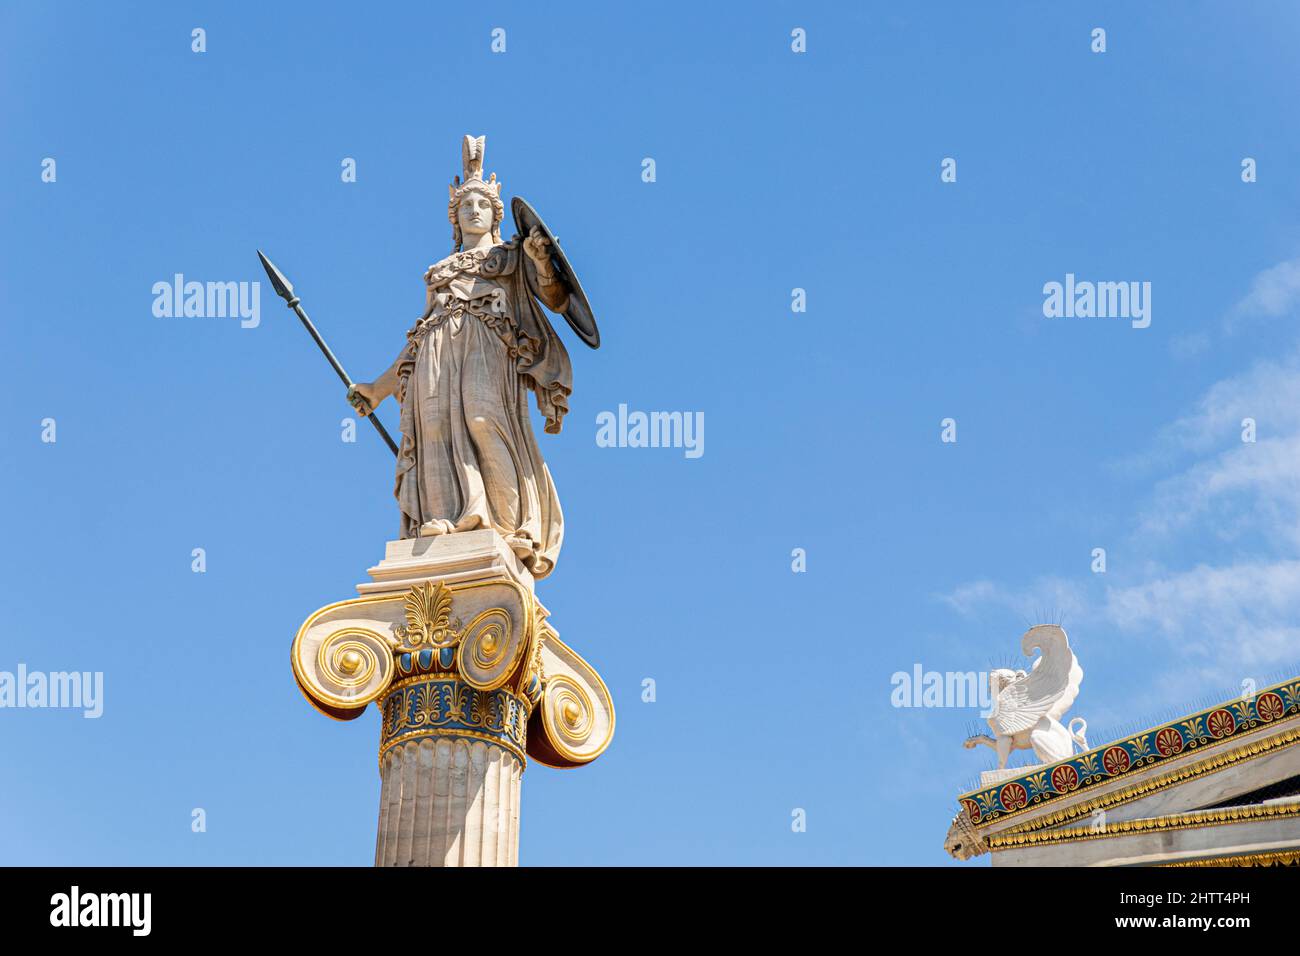 Atene, Grecia. Colonna statua della dea Atena, una delle divinità olimpiche nella religione greca classica, nella moderna Accademia di Atene Foto Stock